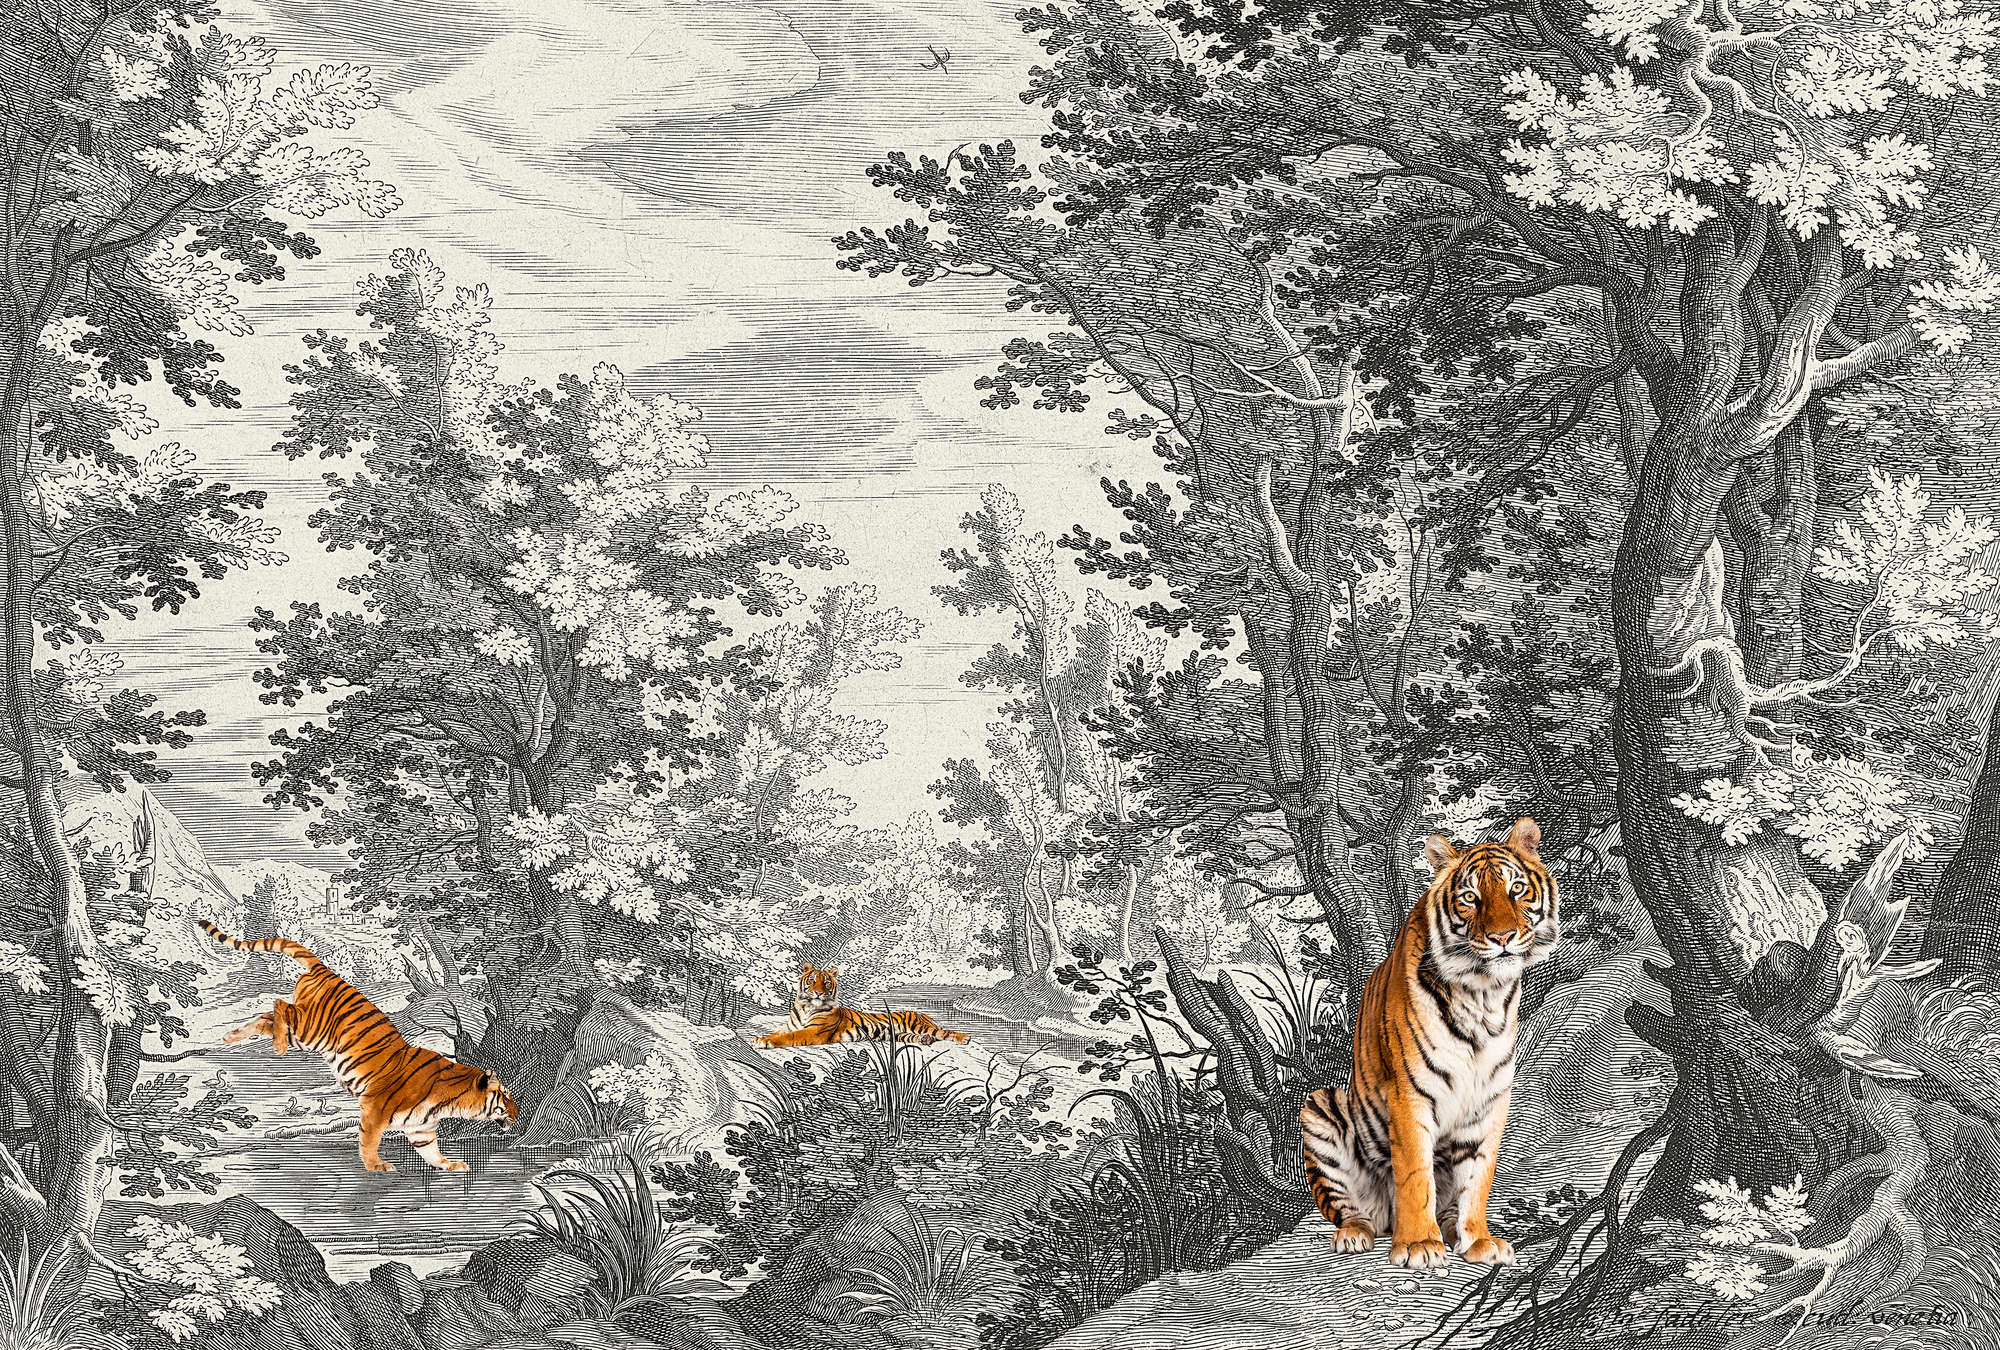             Fancy Forest 2 - Klassiek landschapsbehang met tijger
        